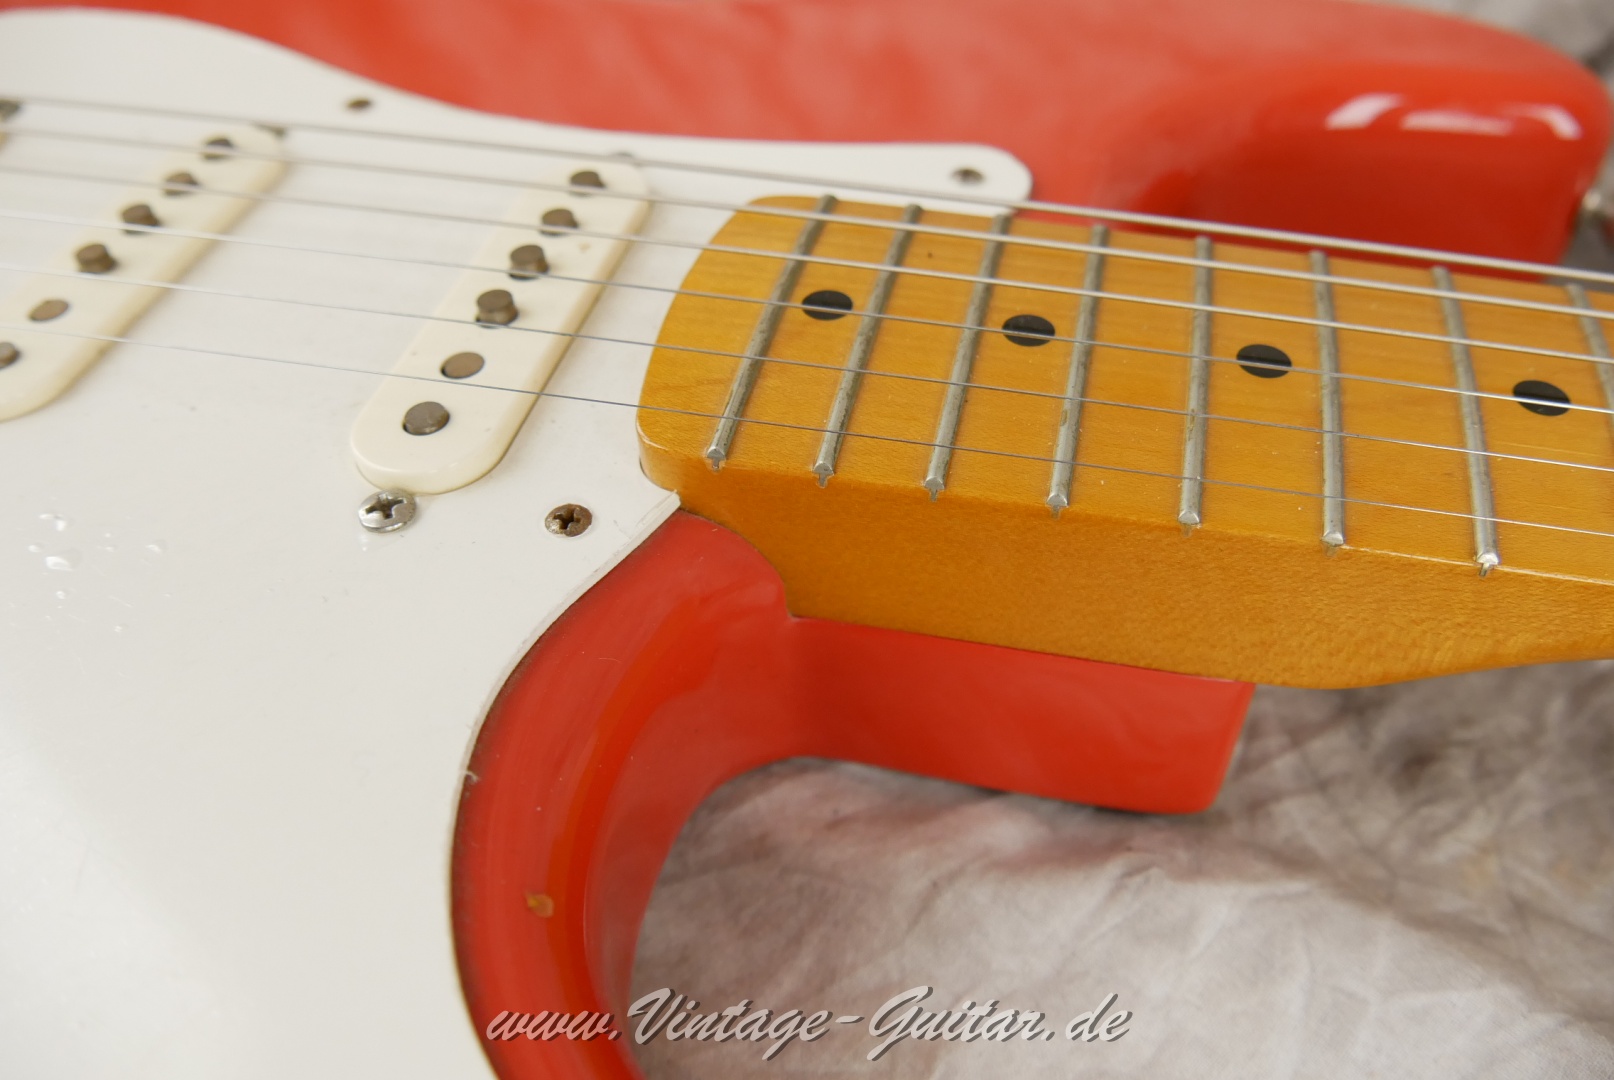 Fender-Stratocaster-50s-Reissue-fiesta-red-016.JPG